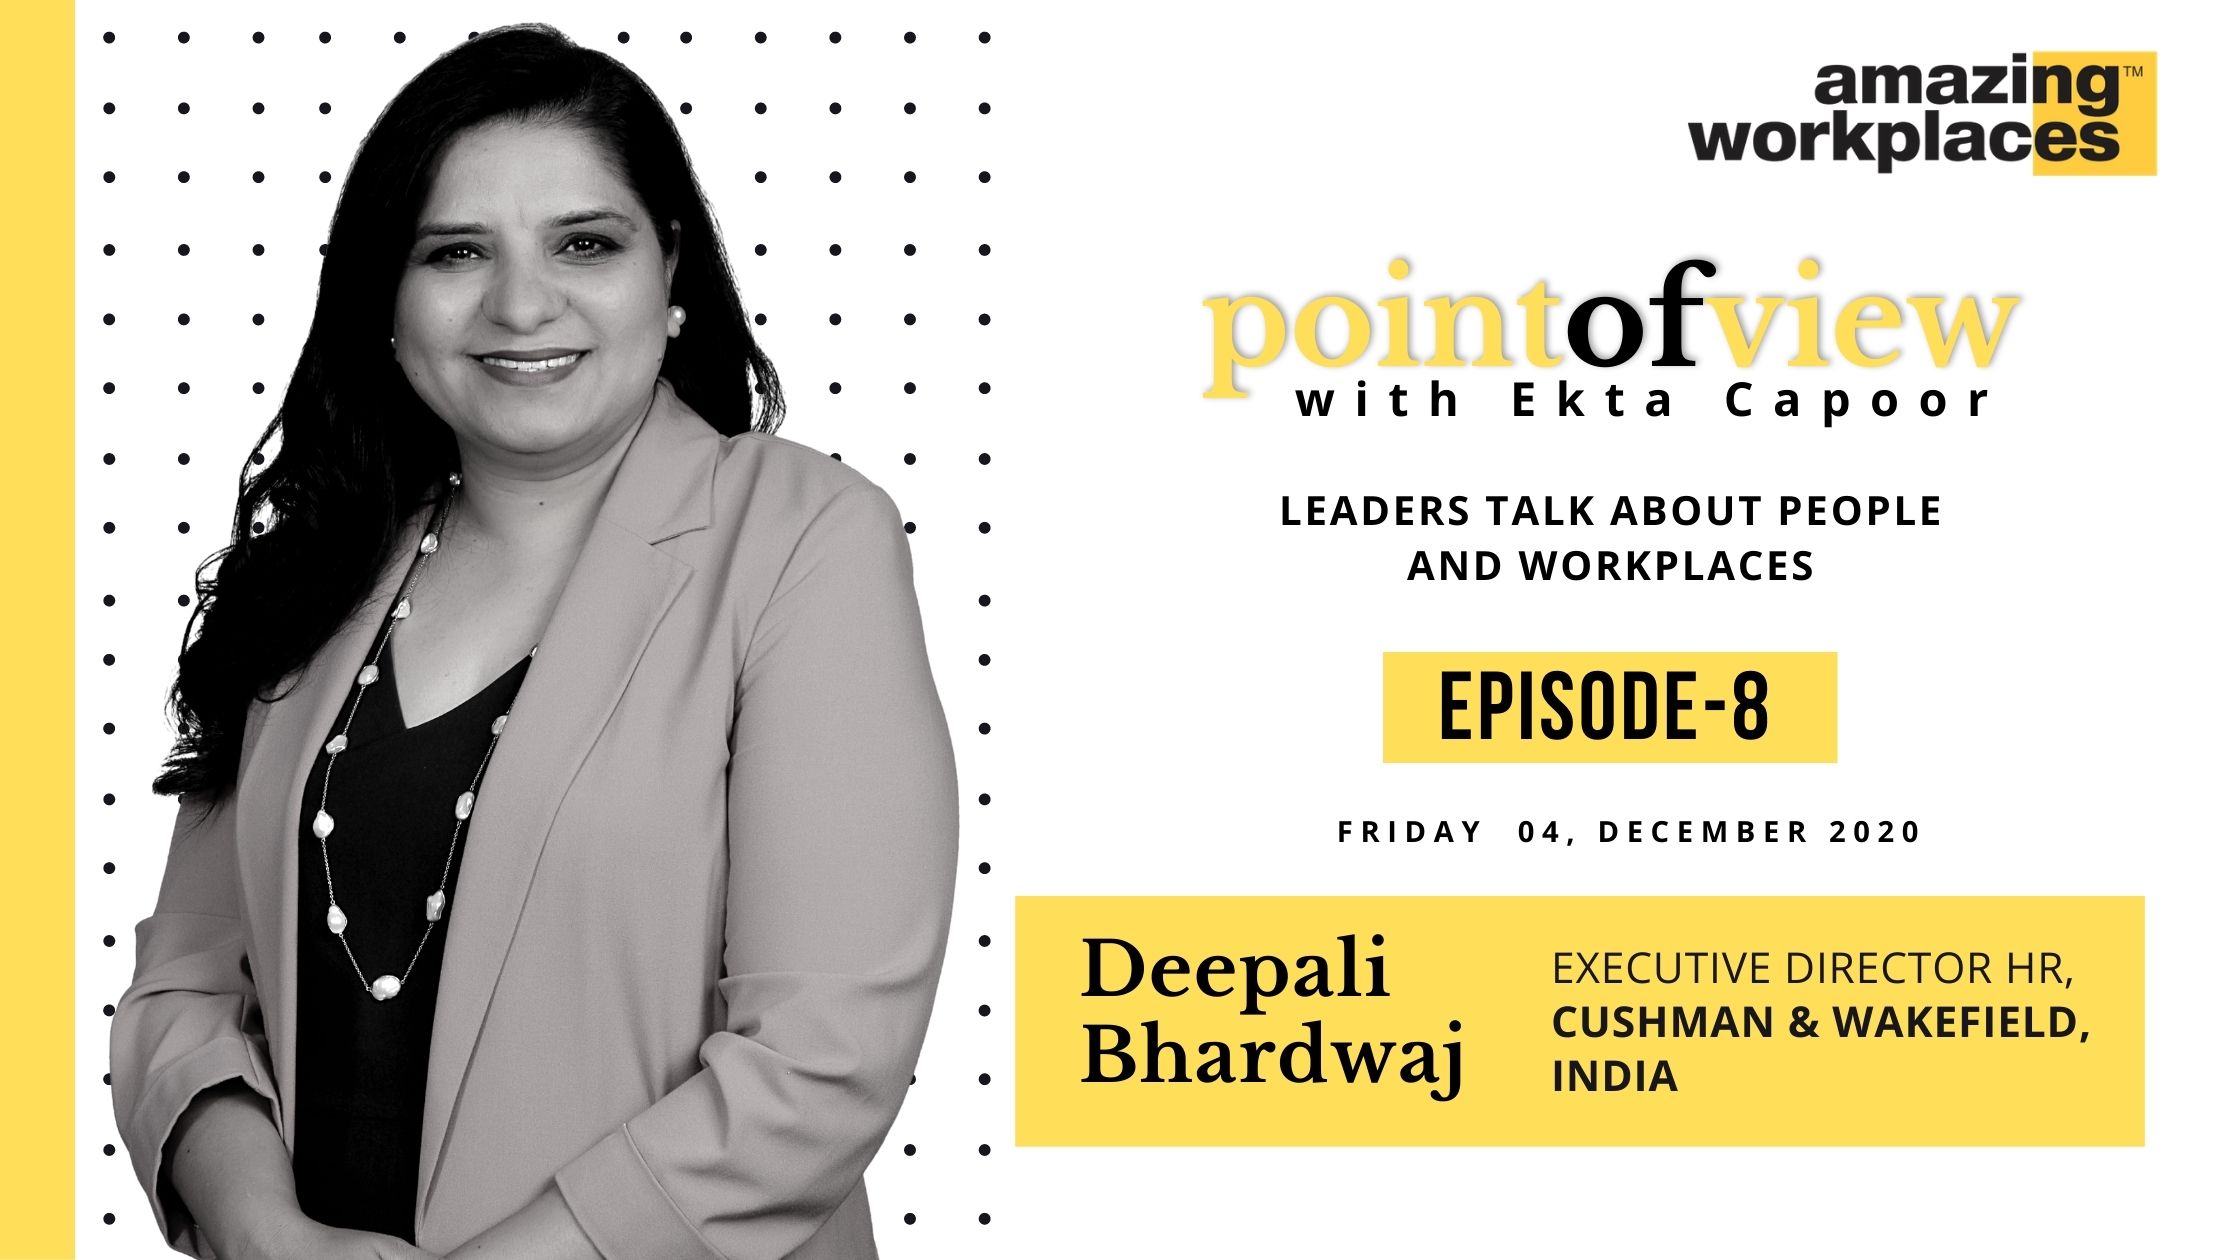 Point-of-View-Episode-8-Deepali-Bharadwaj-HR-Cushman-Wakefield-Amazing-Workplaces